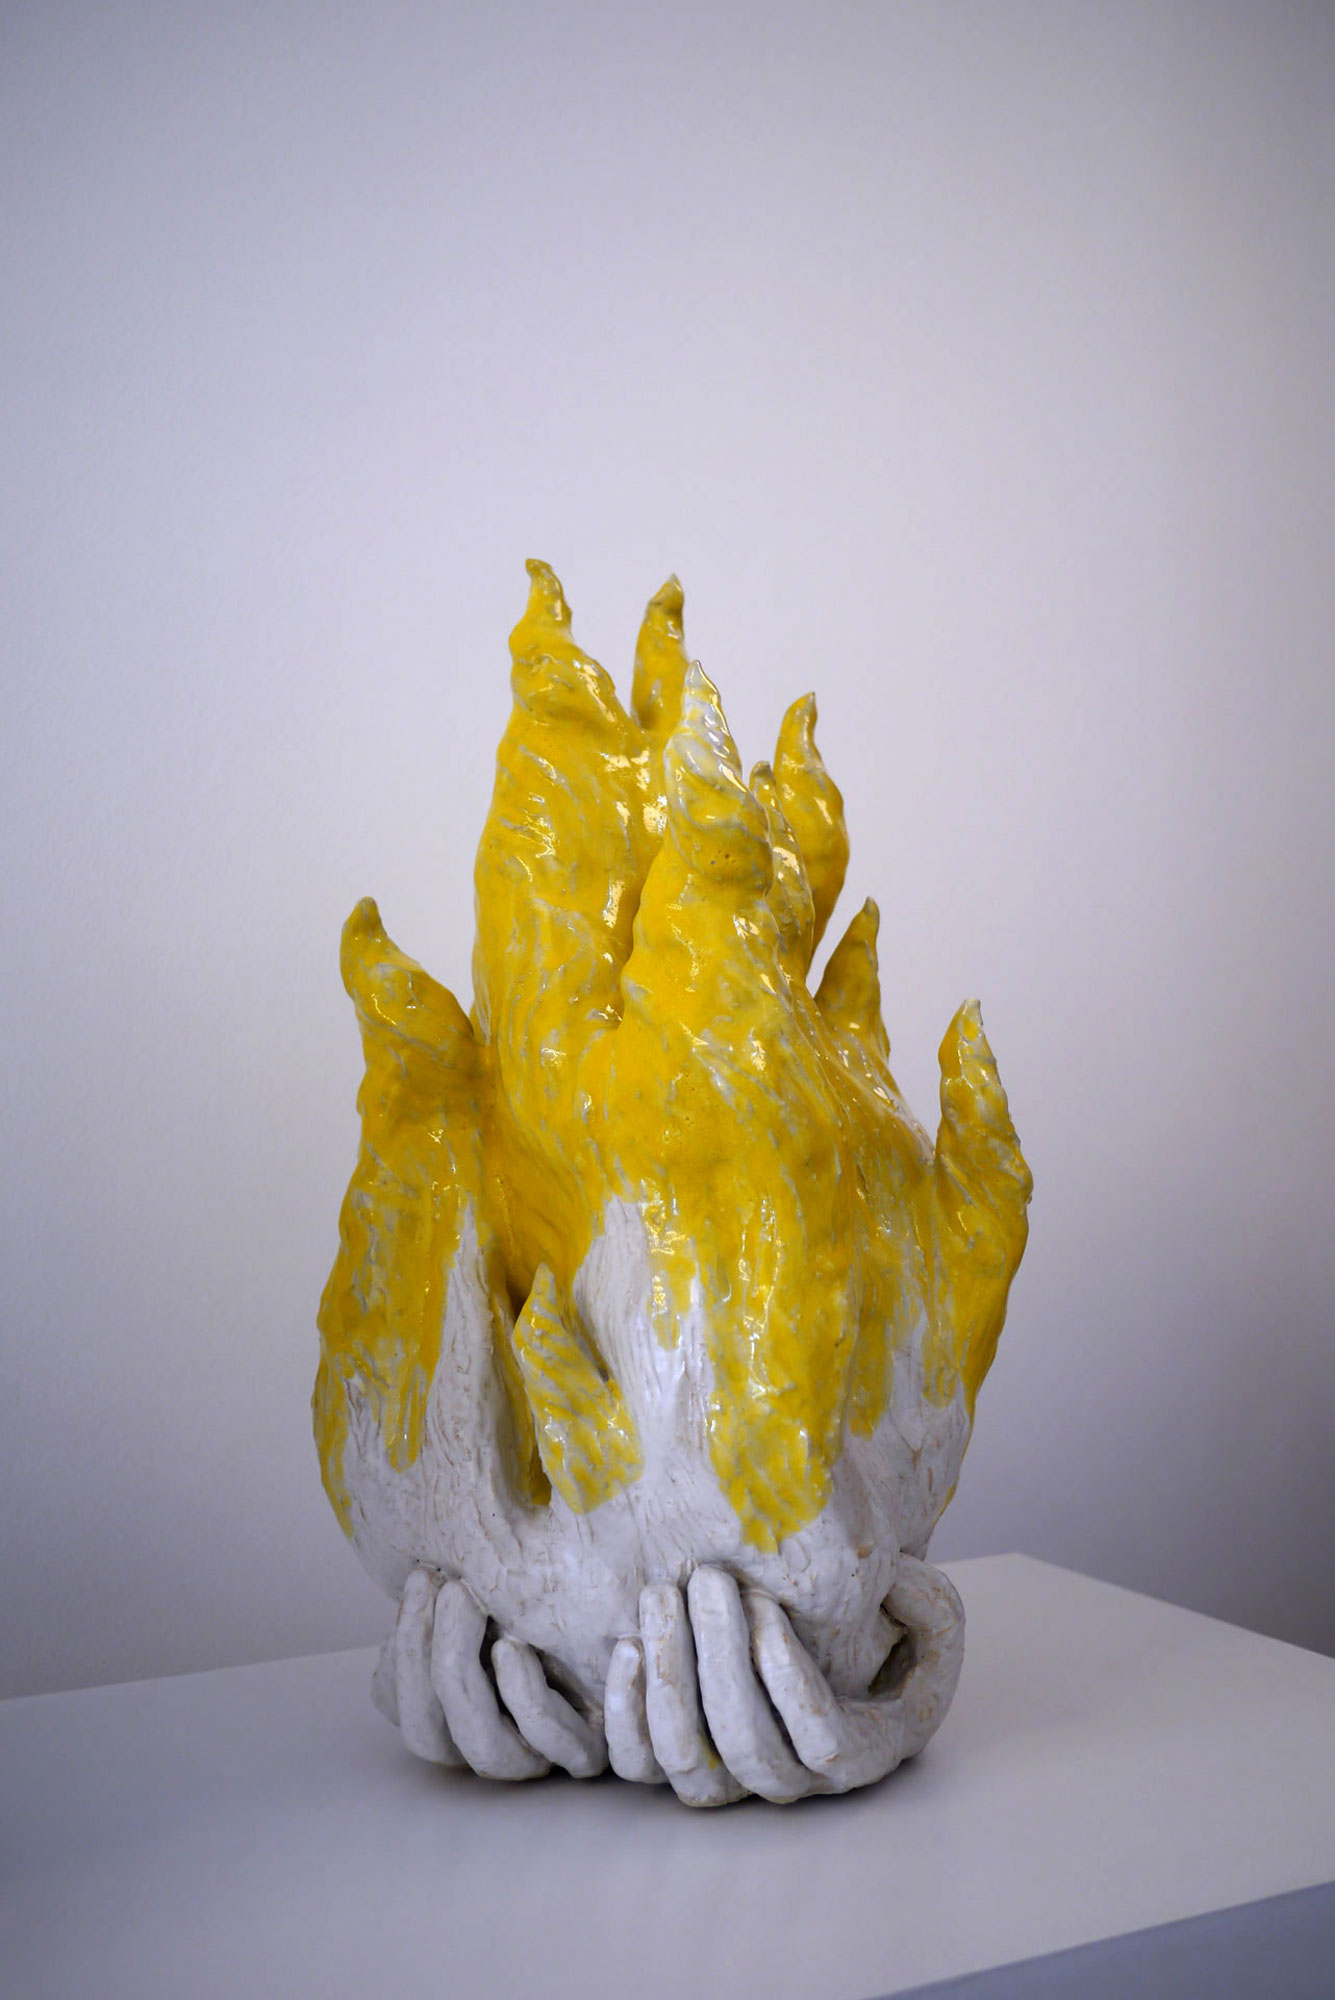 Garder la Flamme, 2015 - Grès émaillé,
modelage - 30 x 30 x 50 cm - Photo : FRACAS Gallery